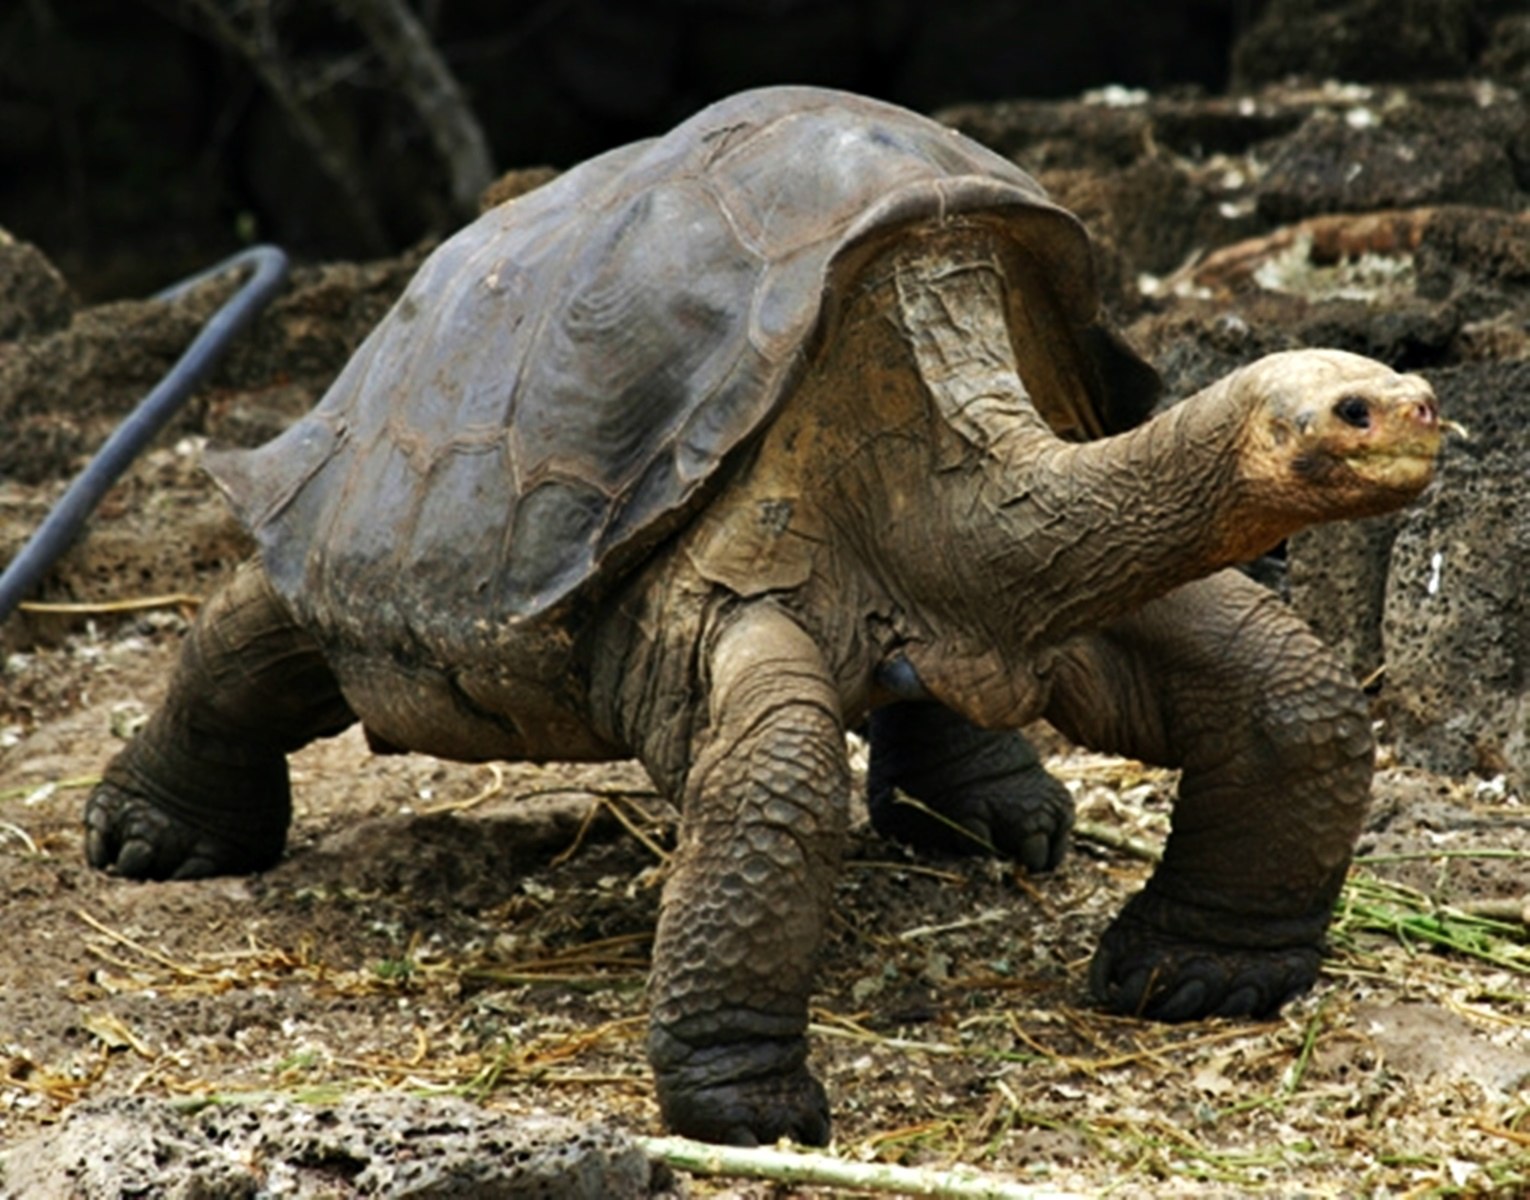 Абингдонские слоновые черепахи. Абингдонская слоновая черепаха. Галапагосская черепаха Джордж. Галапагосская черепаха одинокий Джордж. Абингдонская слоновая черепаха одинокий Джордж.